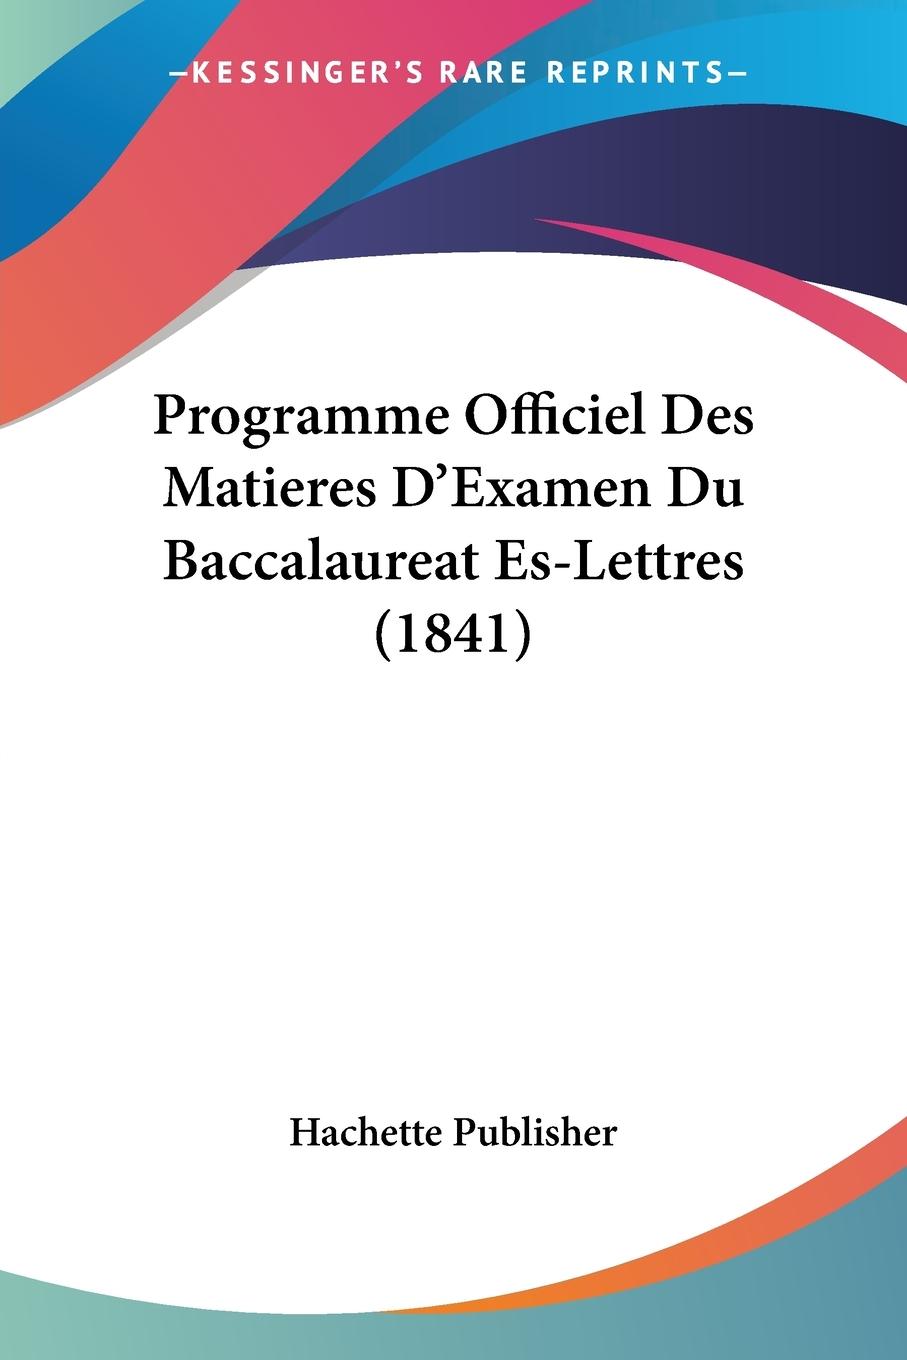 Programme Officiel Des Matieres D Examen Du Baccalaureat Es-Lettres (1841) - Hachette Publisher